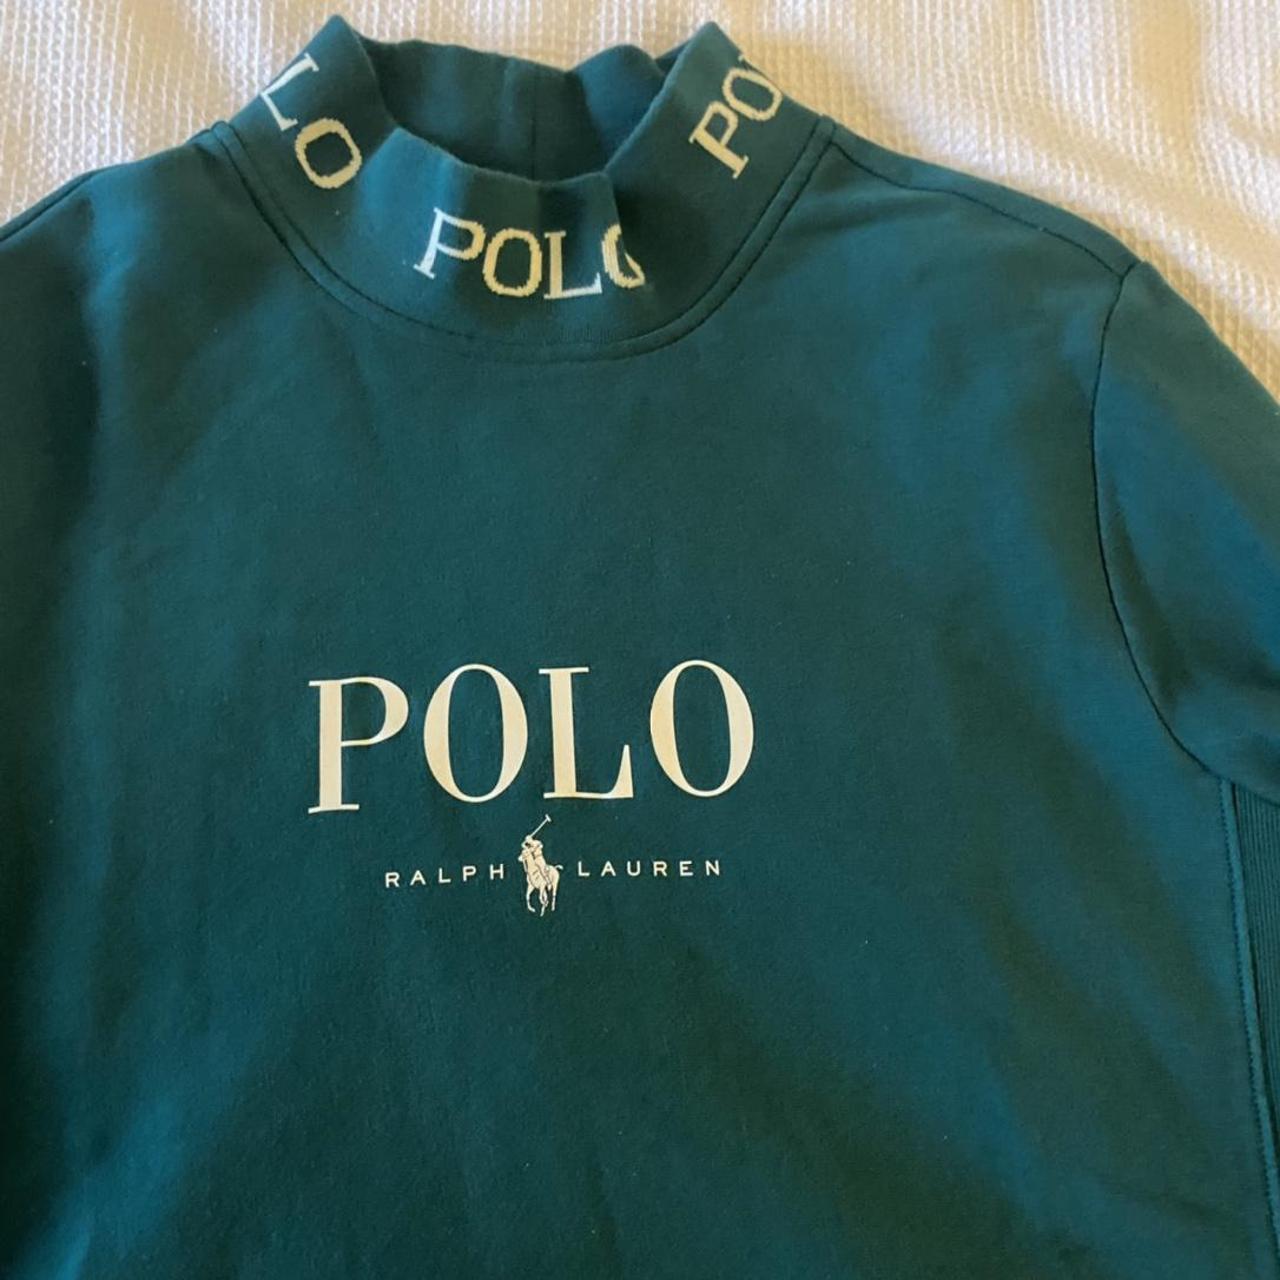 Polo Ralph Lauren- Medium sized high neck emerald... - Depop